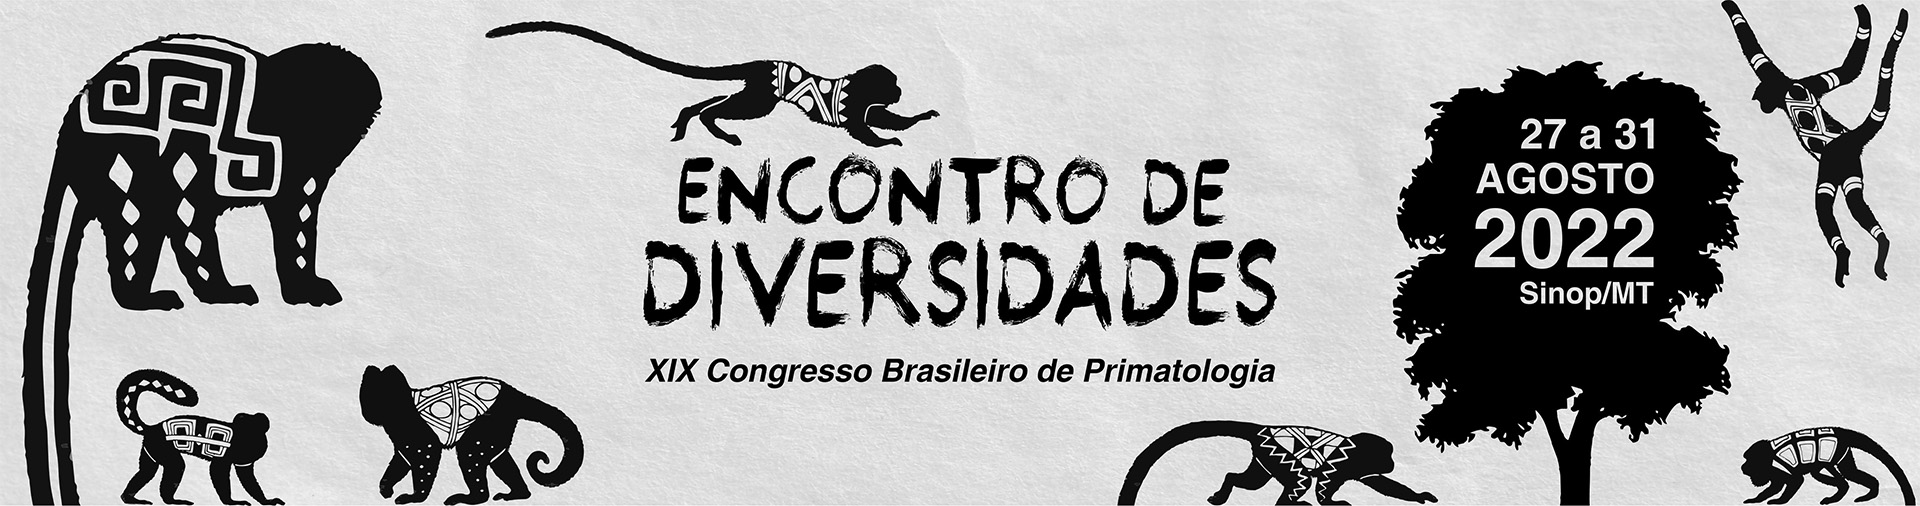 XIX Congresso Brasileiro de Primatologia